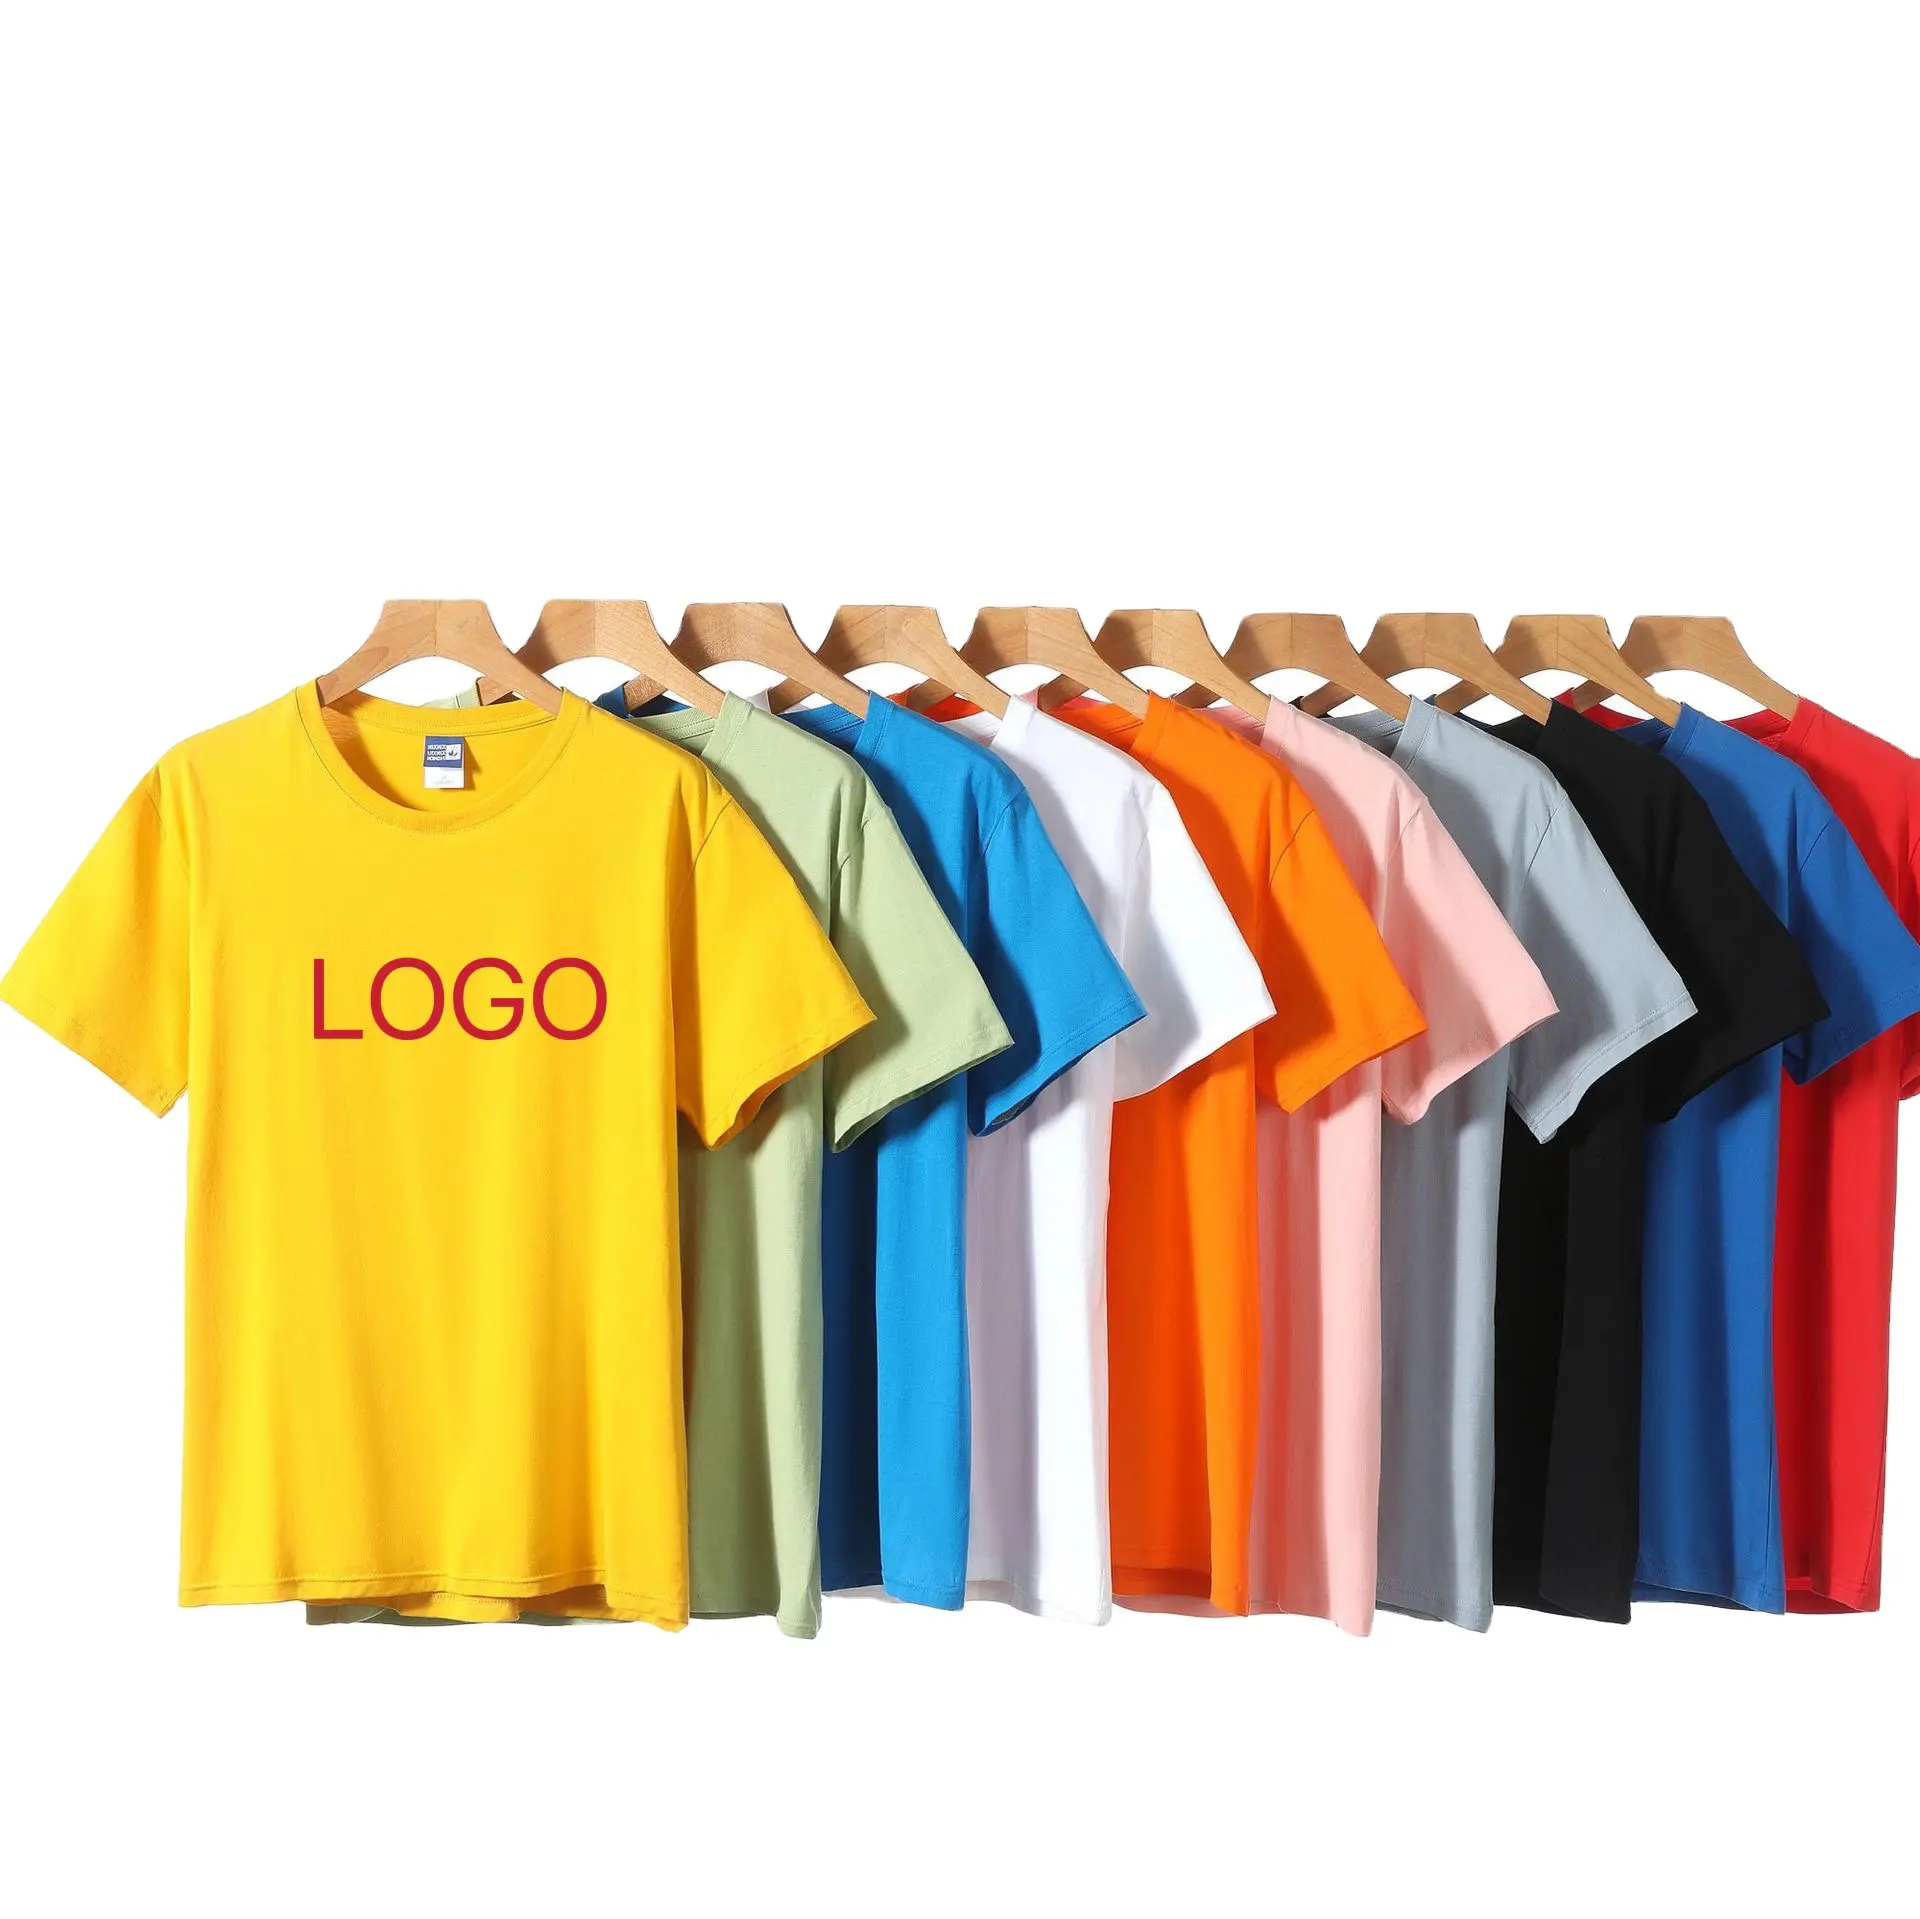 Versión de abrigo personalizado de suelta y ajustada cualquier material bordado impresión LOGO bajo MOQ personalizado mujer hombres camiseta